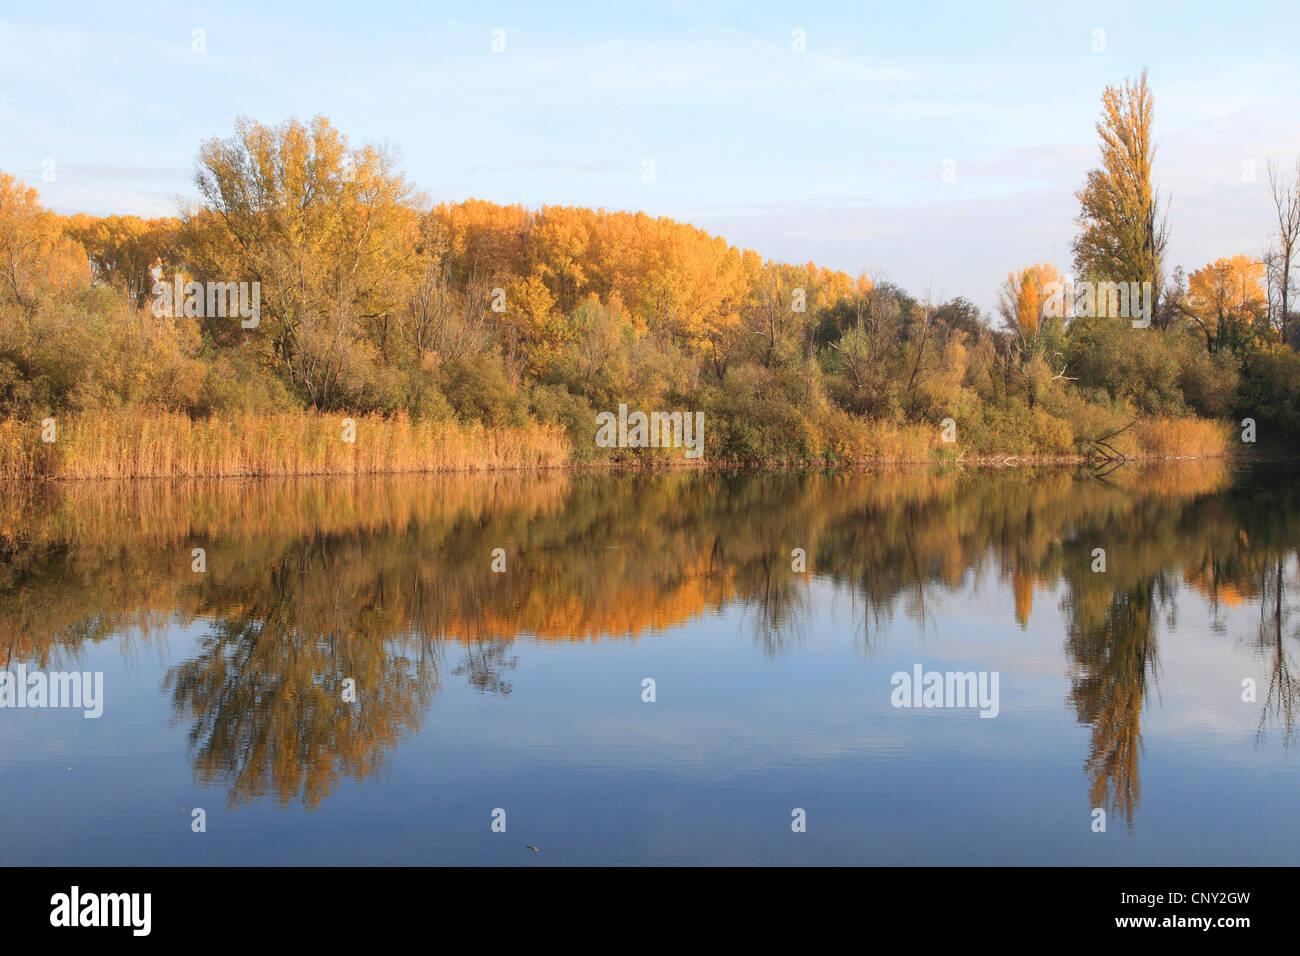 Le peuplier blanc, peuplier à feuilles d'argent, Abele (Populus alba), paysage à l'ancienne plaine du Rhin avec forêt en automne les couleurs, Allemagne Banque D'Images